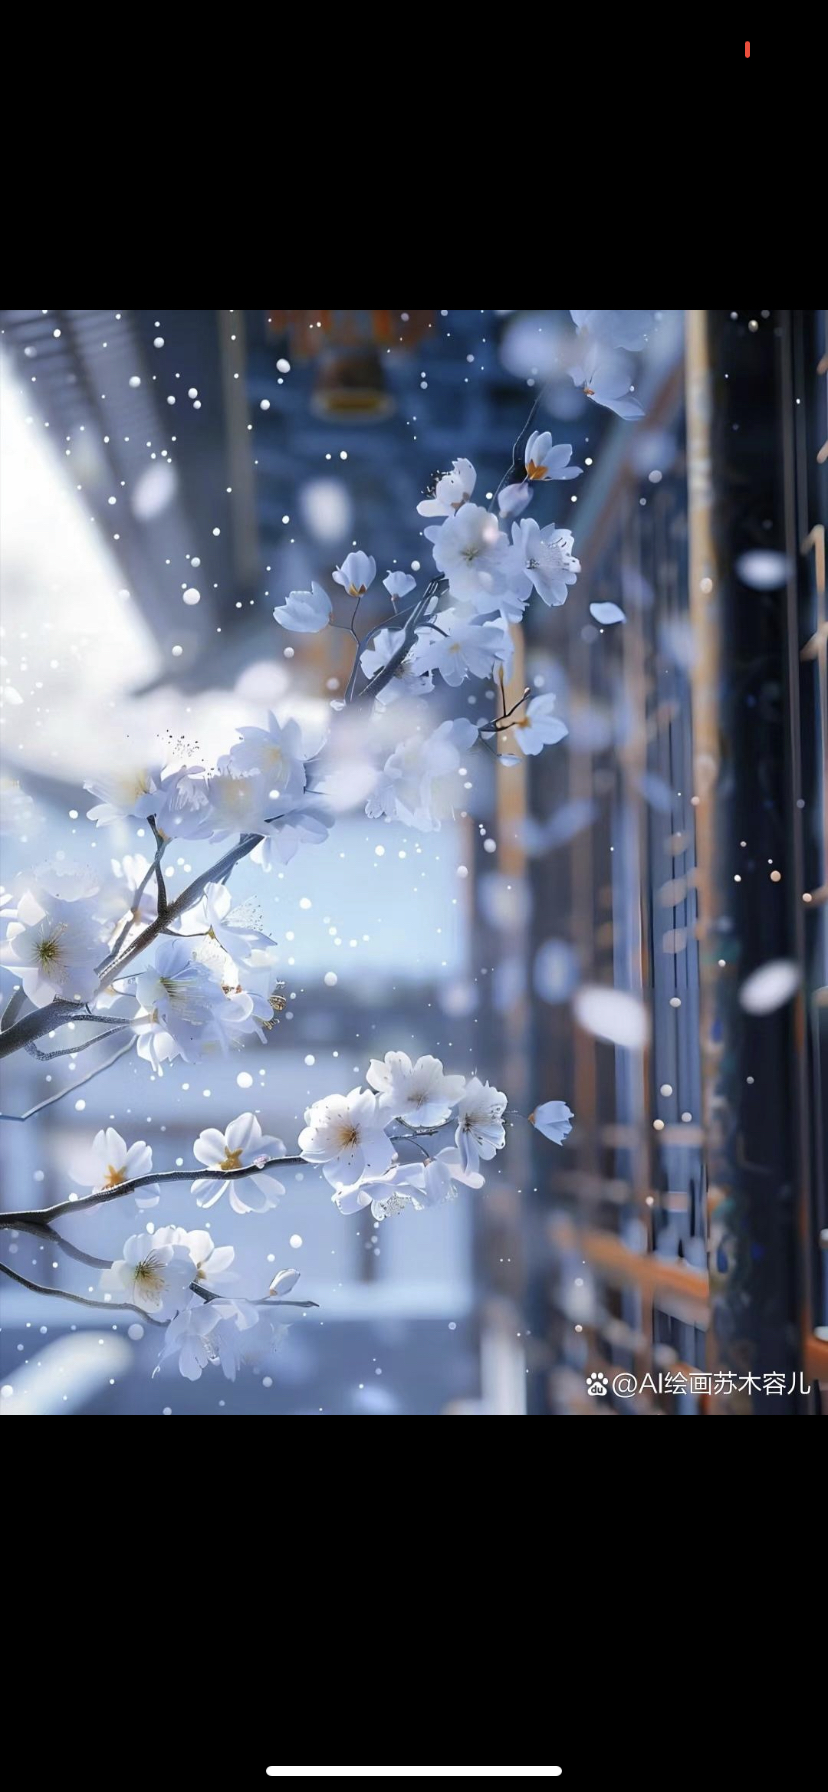 枝头垂下的,不只是白色的花朵,更有那轻盈飘落的雪花